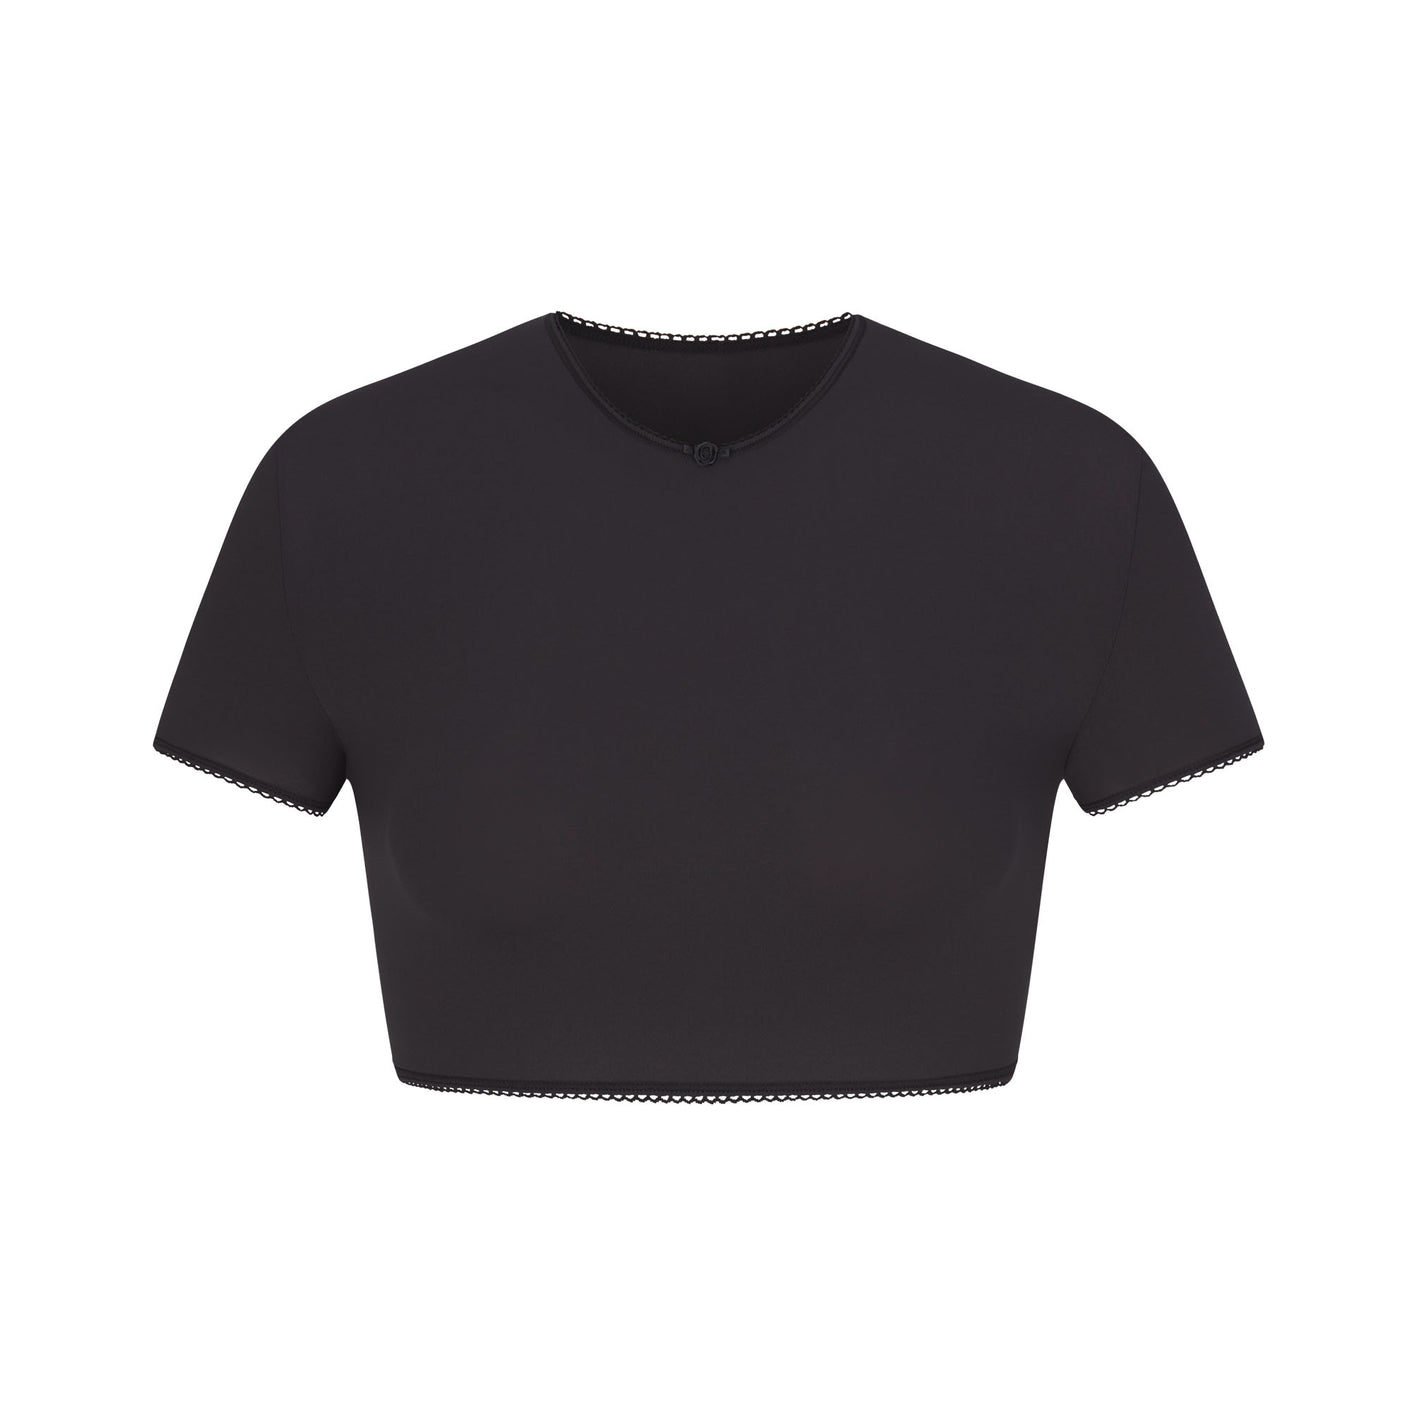 Skims Crop Mesh Top - Skims Tops - Skims Crop Shirt – Upside Threads